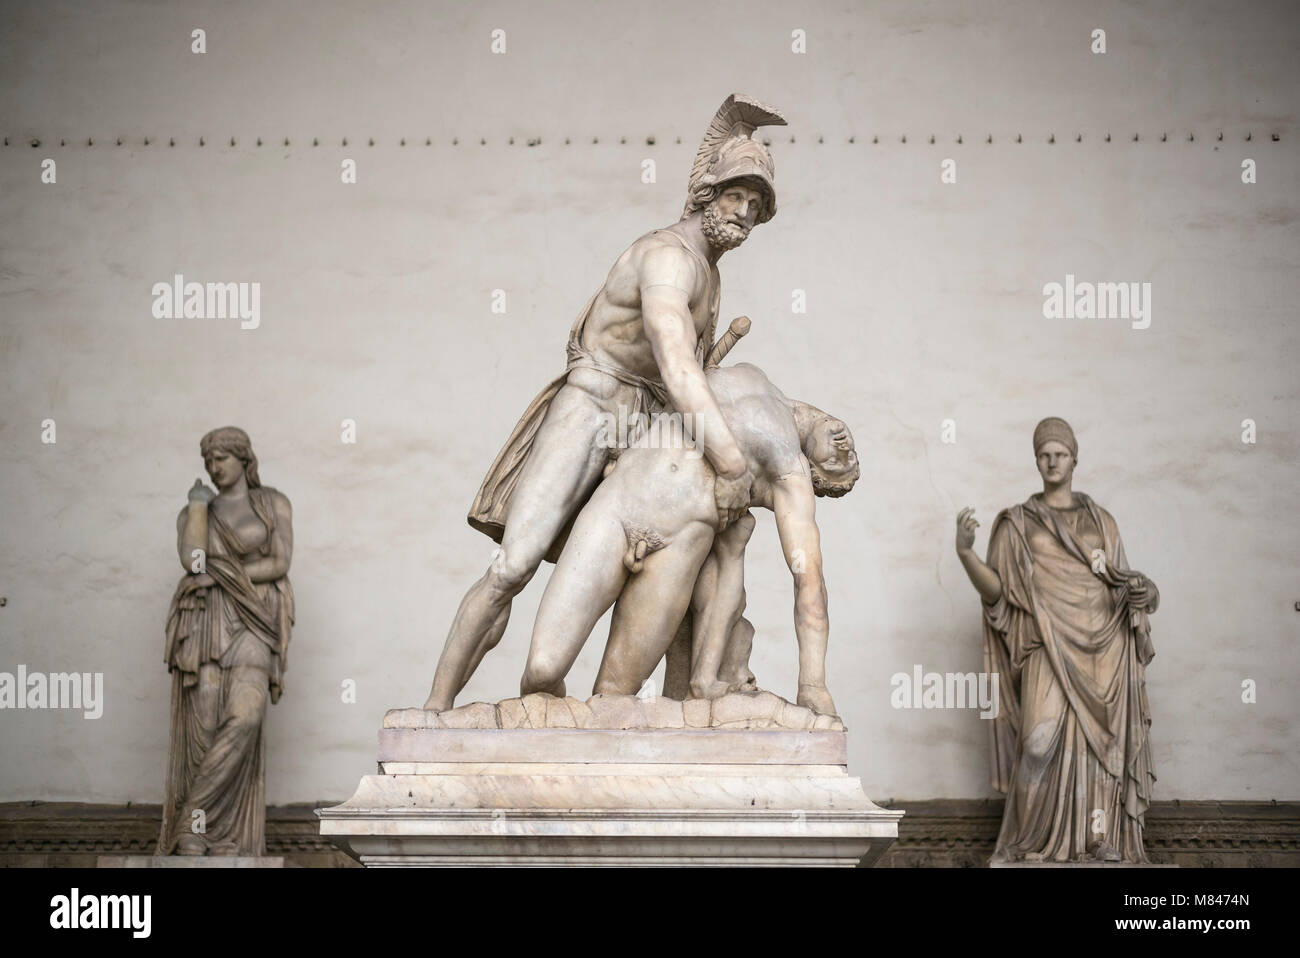 Florenz. Italien. Menelaus Halten den Körper des Patroklos, römische Skulptur, die Loggia dei Lanzi, die Piazza della Signoria. Menelaus halten den Körper von Patro Stockfoto